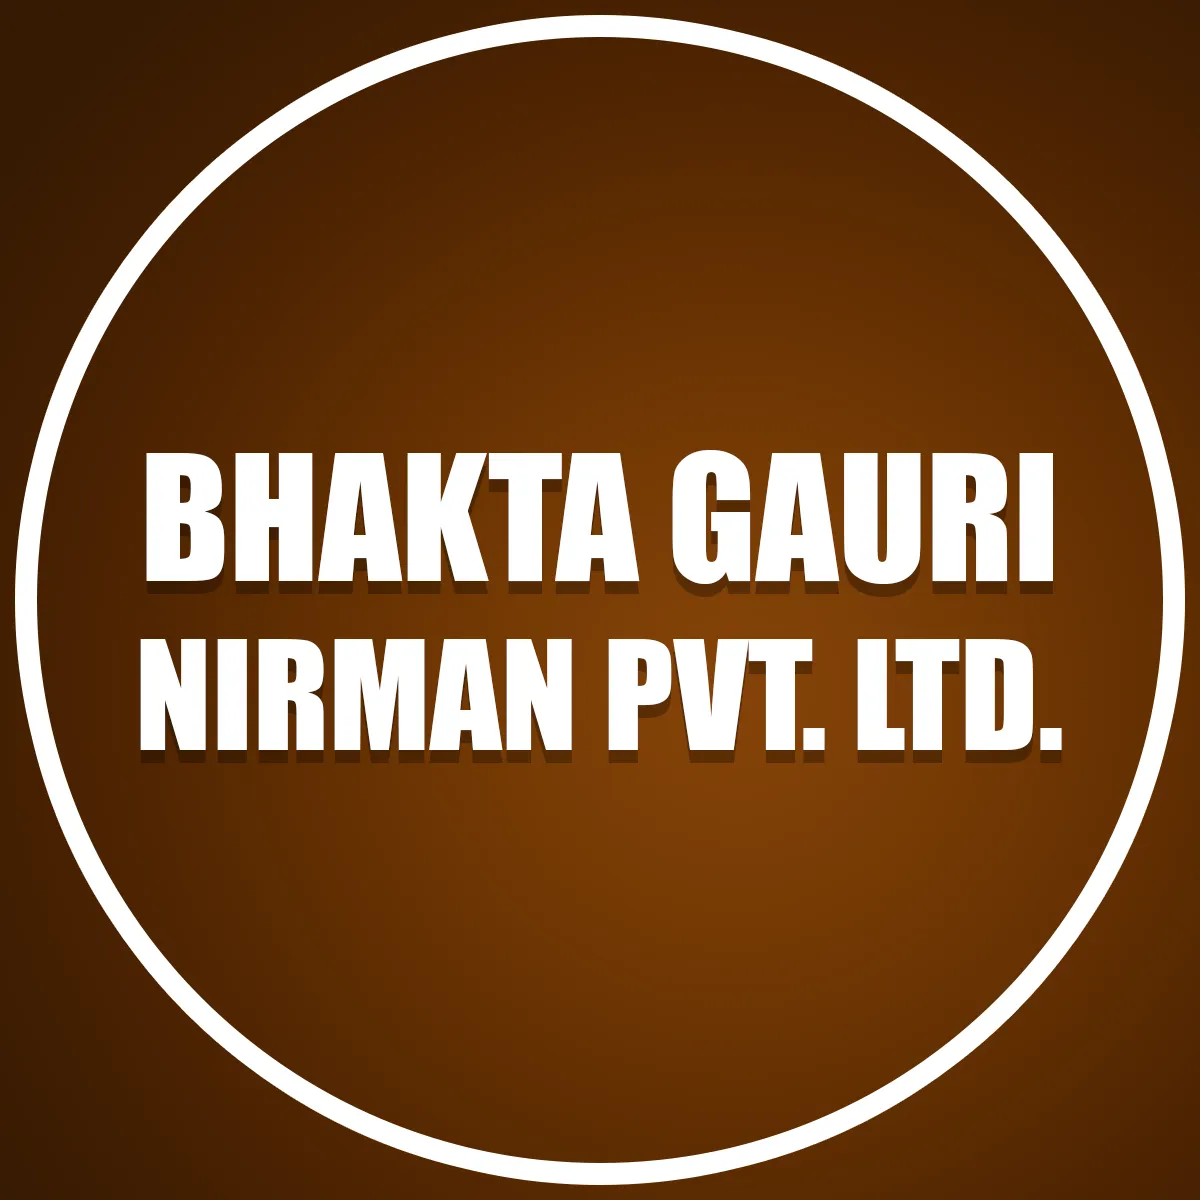 Bhakta Gauri Nirman Pvt. Ltd